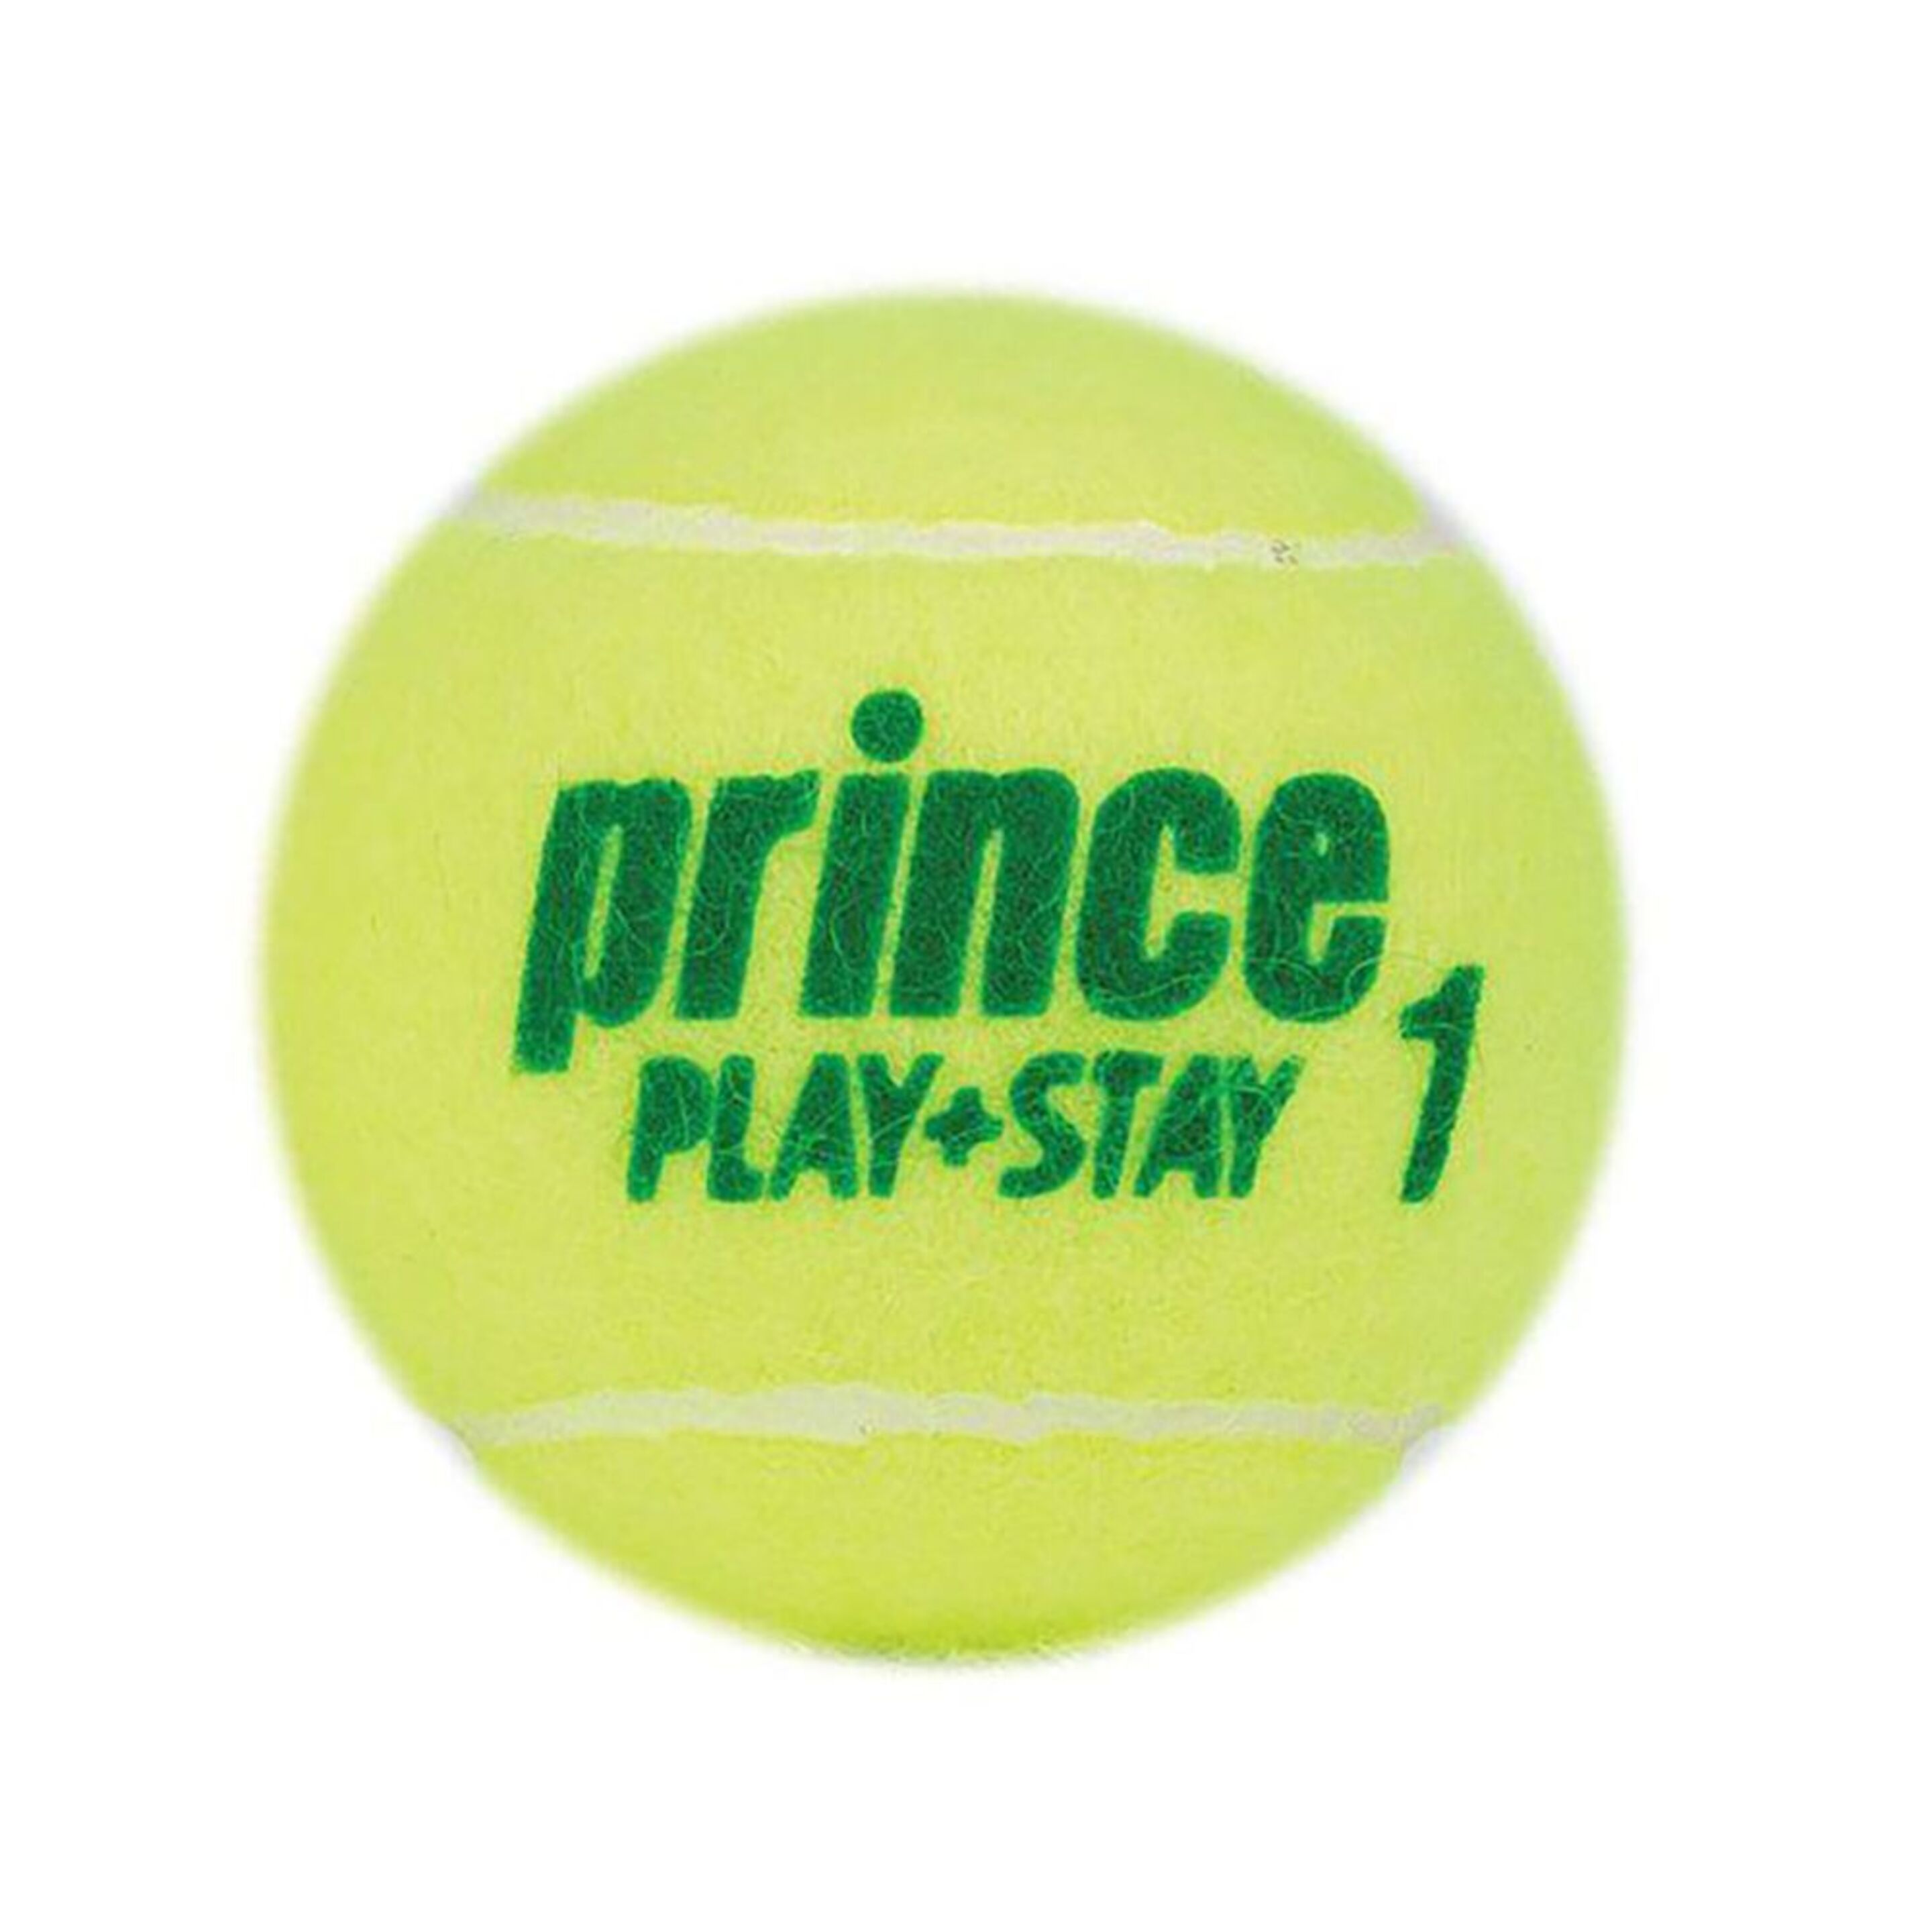 Caja De 24 Botes De 3 Bolas De Tenis Prince Play & Stay Stage 1 - amarillo - 